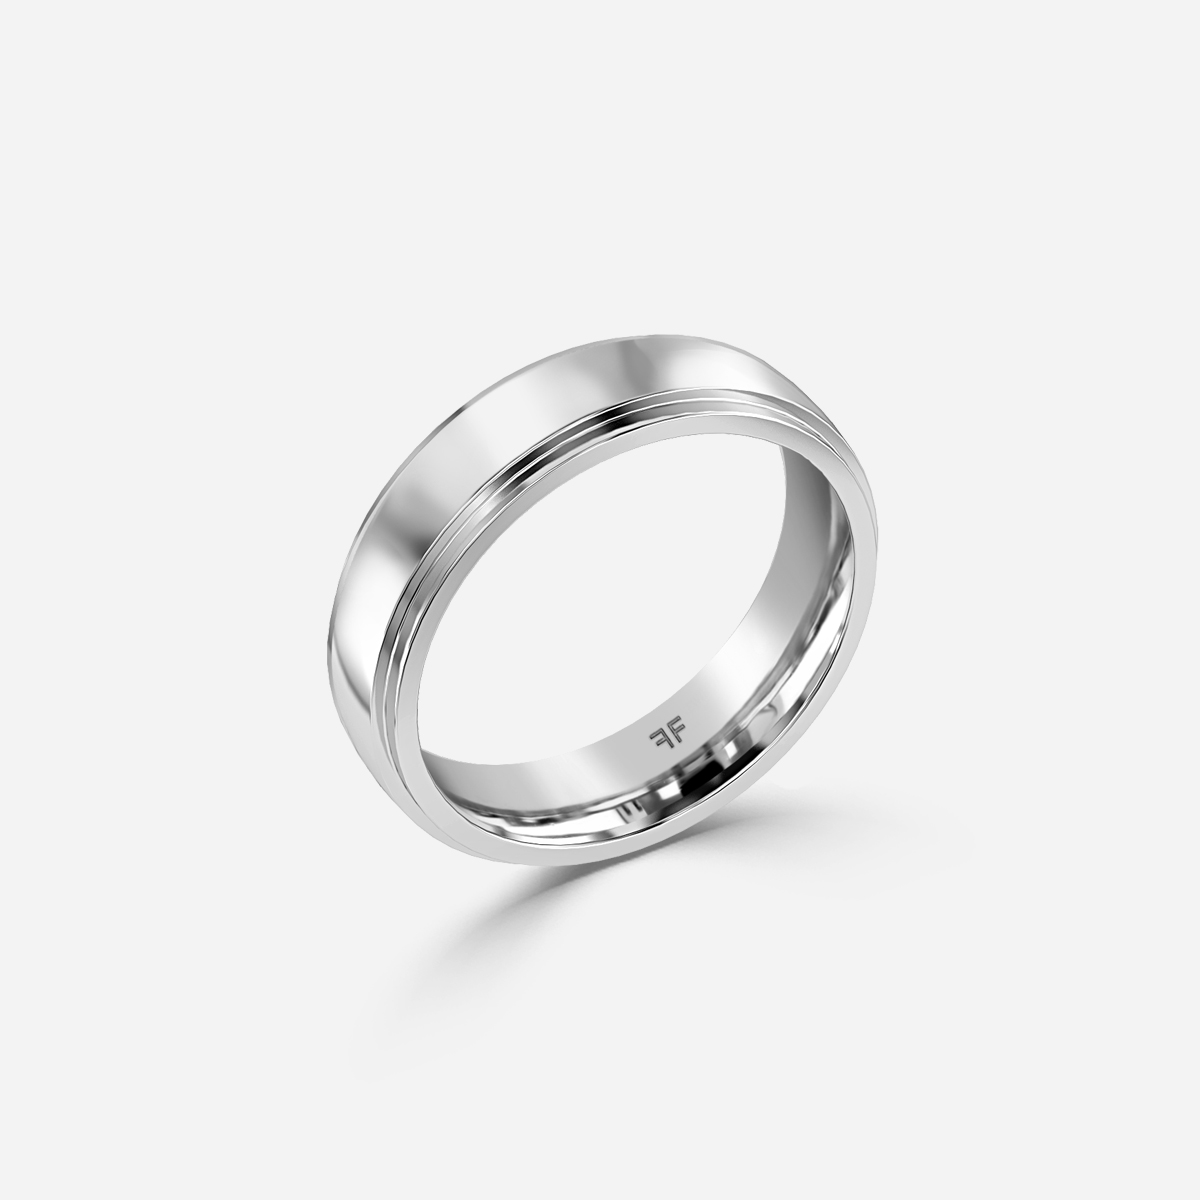 Merriot 5mm White Gold Wedding Ring